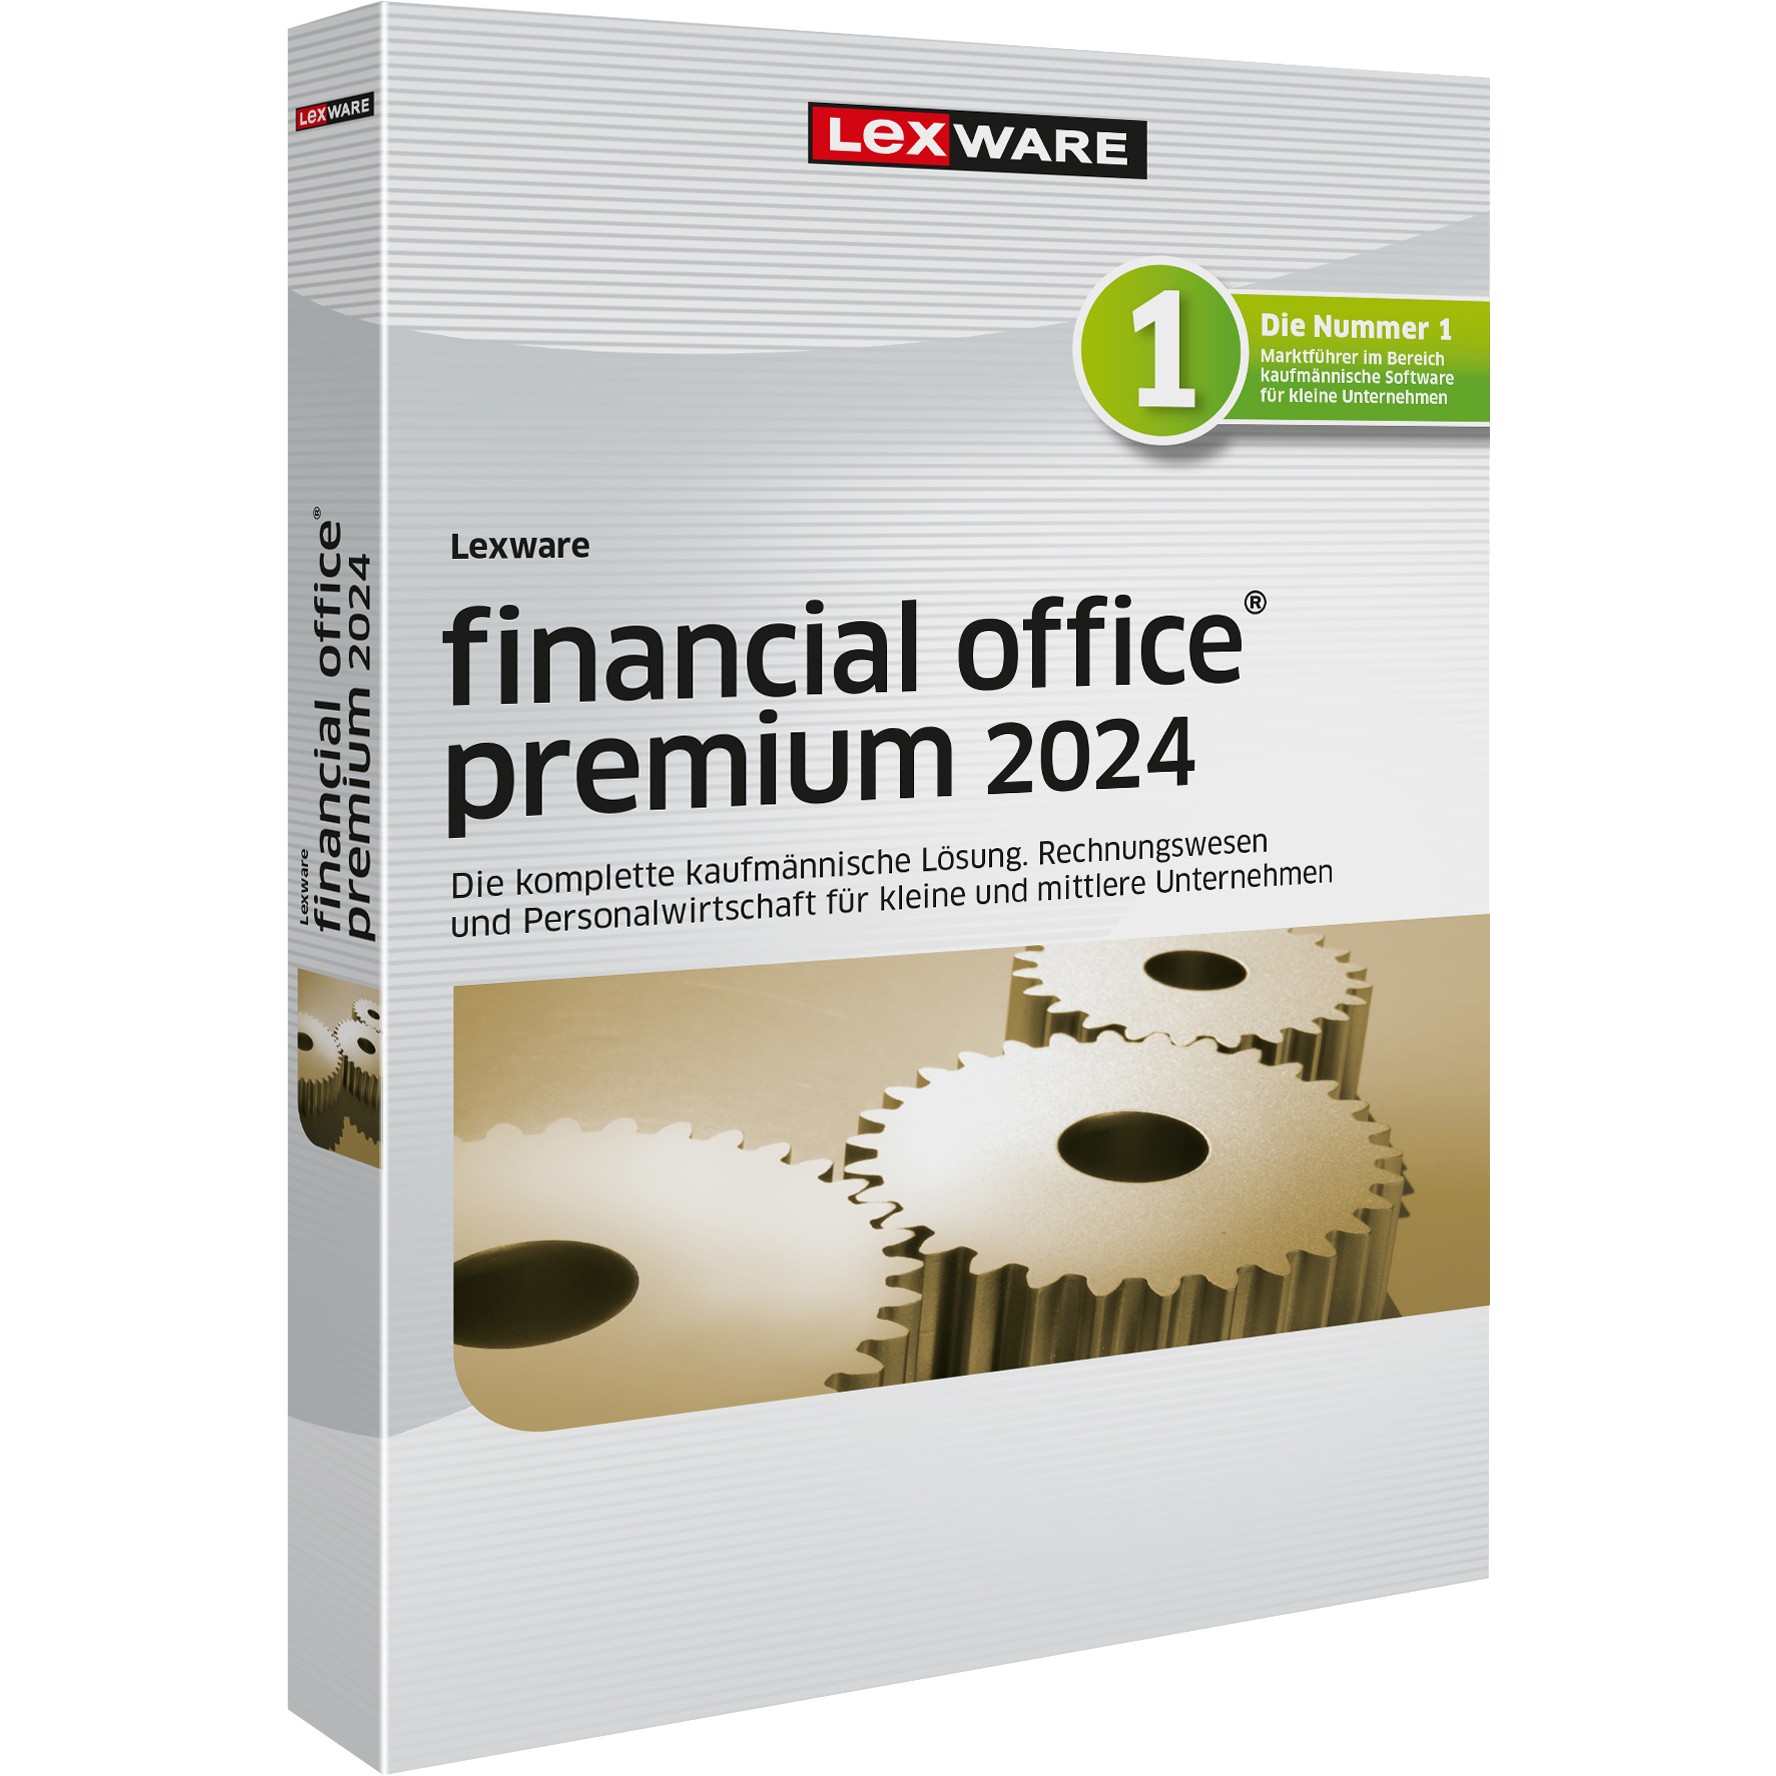 Lexware Financial Office Premium handwerk 2024 - 1 Devise. ABO - ESD - 02017-2031